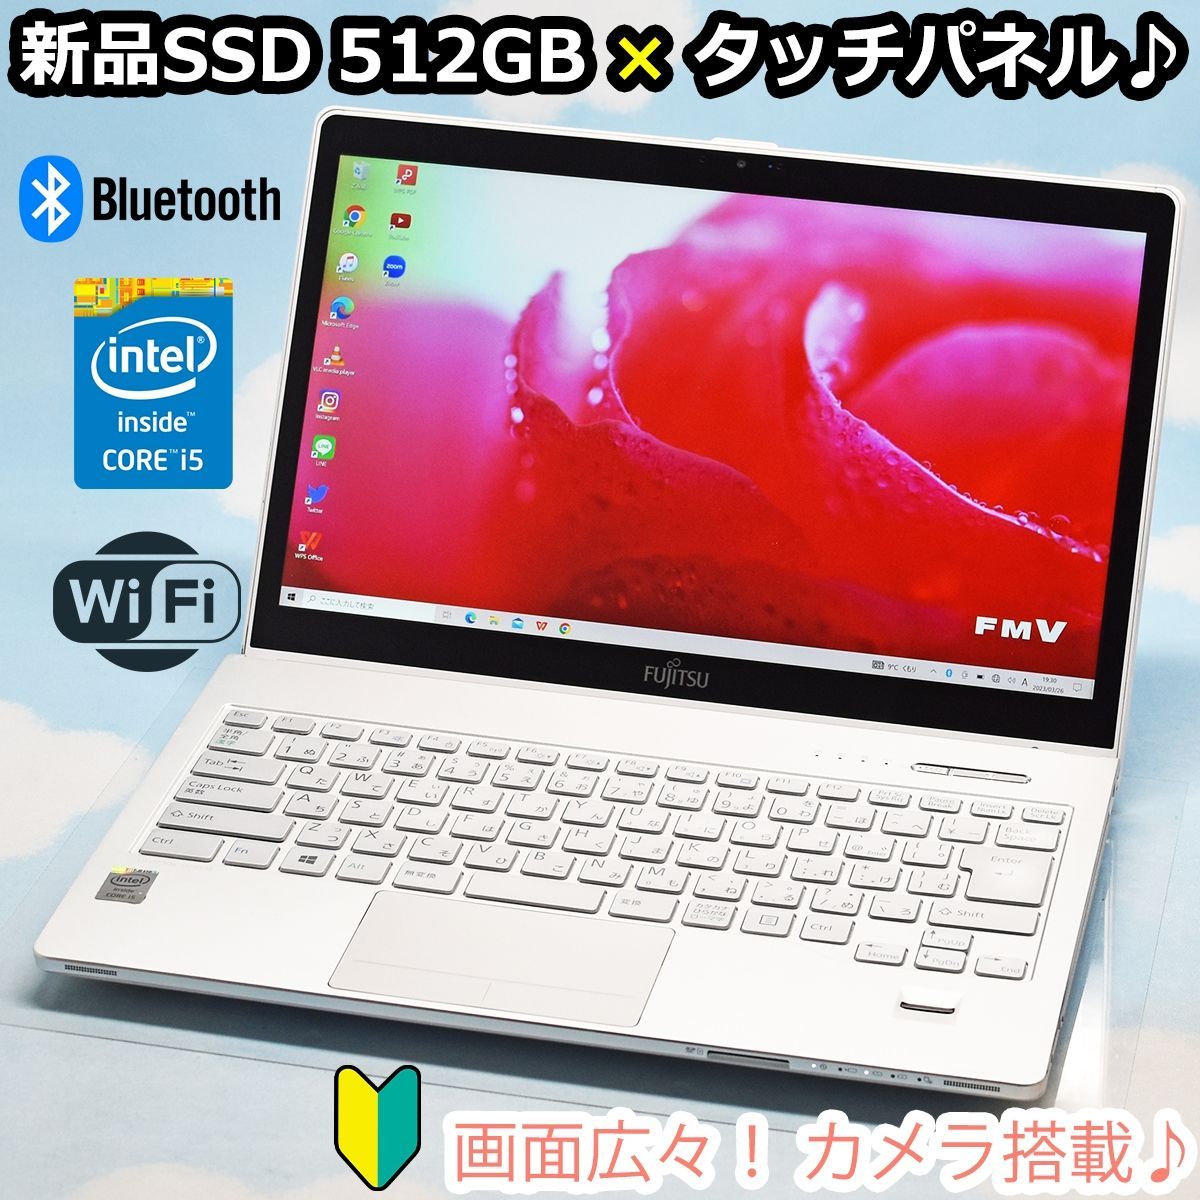 【高性能・Win11ノートバソコン】初期設定済・カメラ・タッチパネル液晶